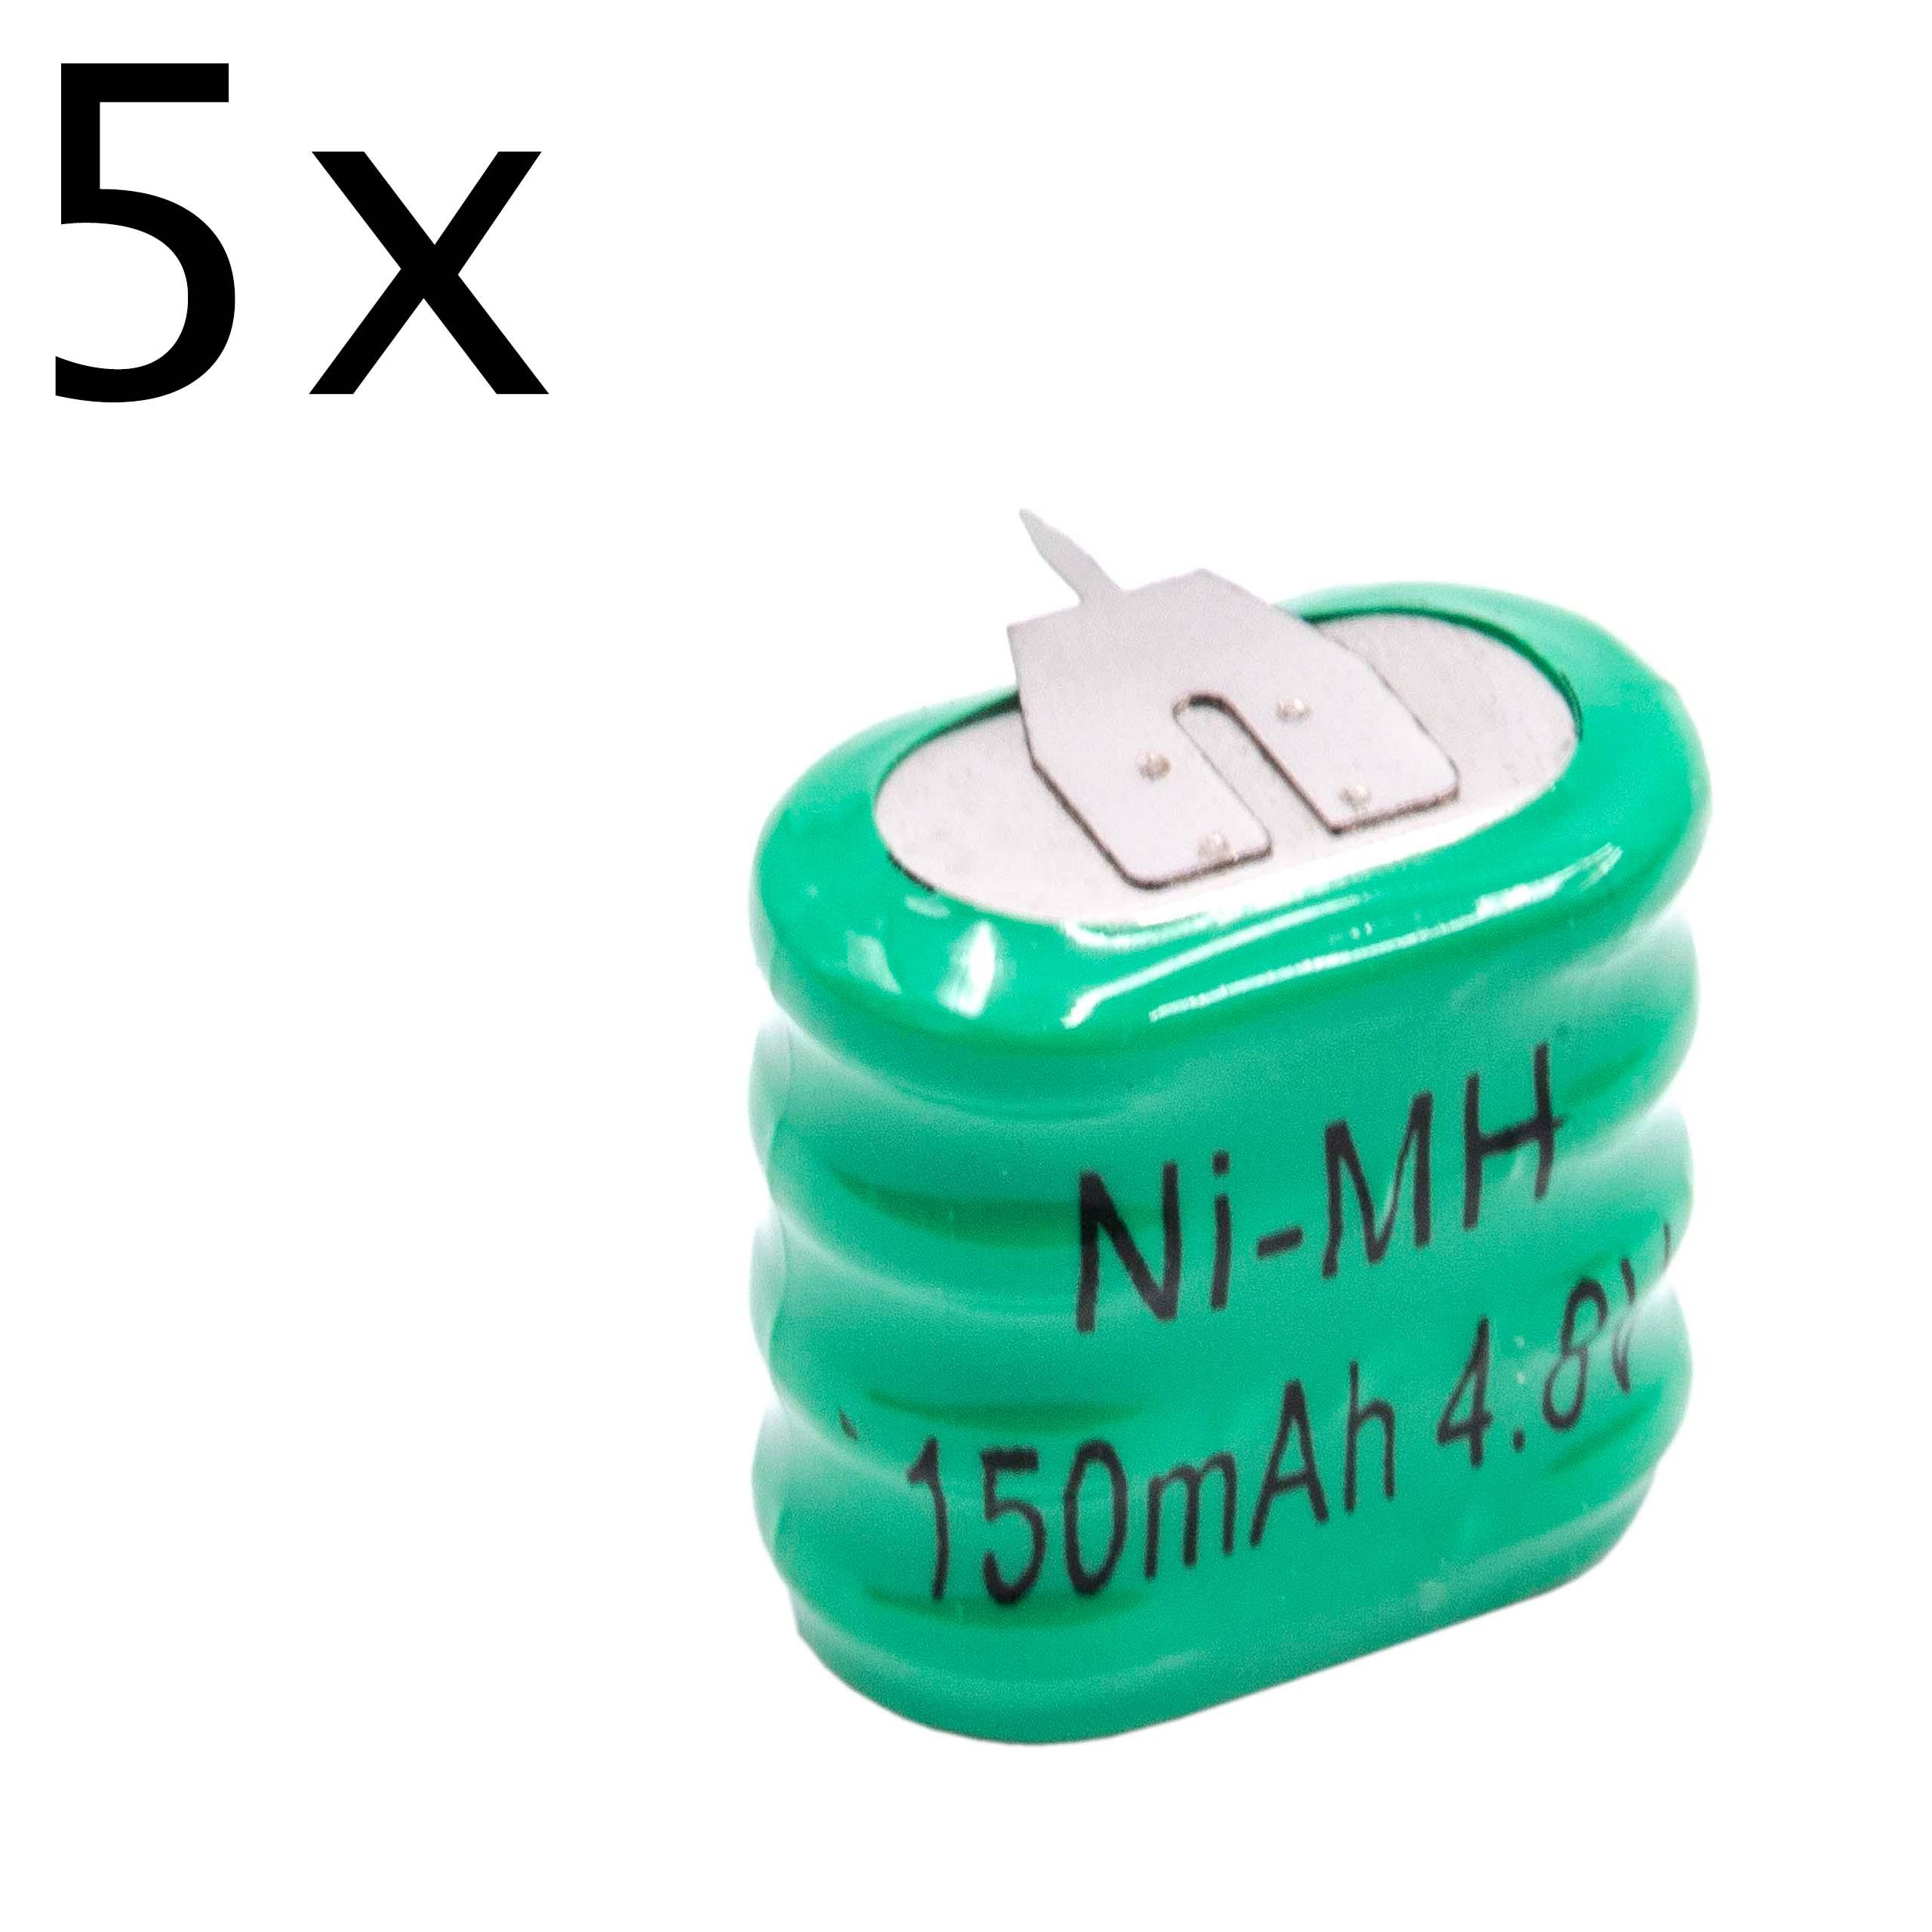 5x Piles bouton (4x cellules) de type 4/V150H 3 broches pour le modélisme et autres - 150mAh 4,8V NiMH